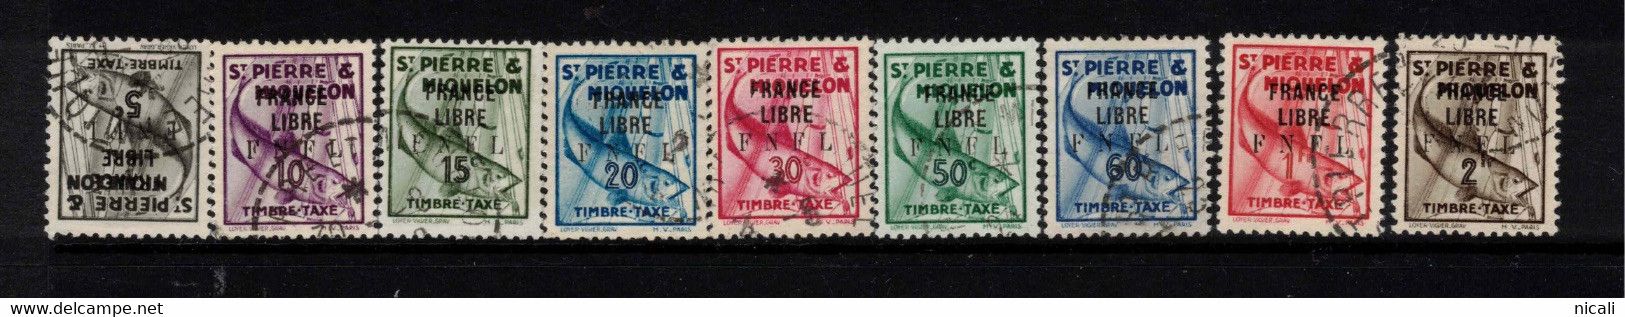 ST PIERRE & MIQUELON 1941 FRANCE LIBRE FNFL Postage Due SG D310-17 U #BPD05 - Oblitérés